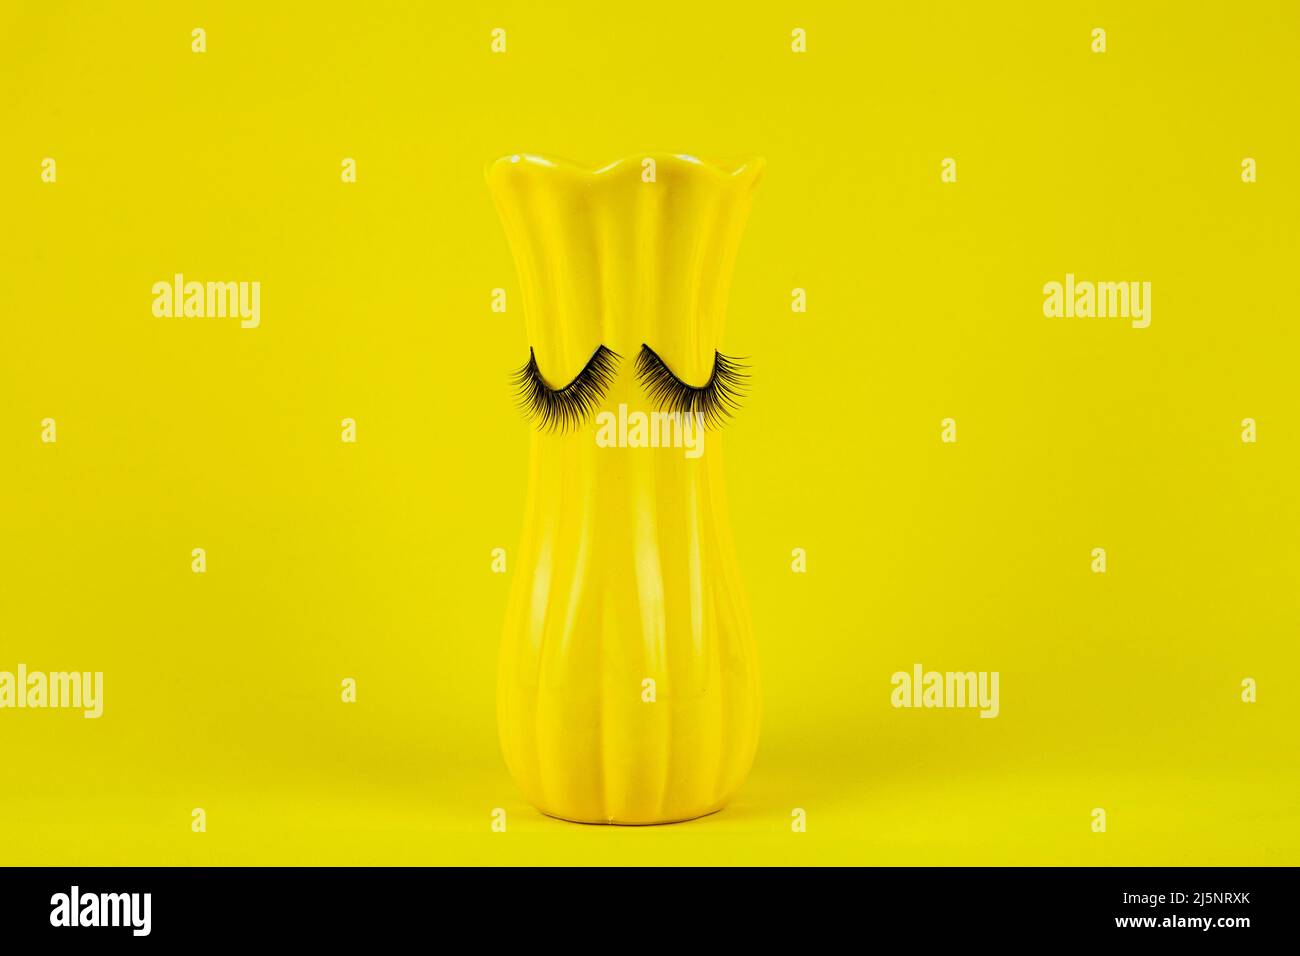 Lustige gelbe Vase mit Augen auf gelbem Hintergrund. Falsche Wimpern werden an die Vase geklebt Stockfoto